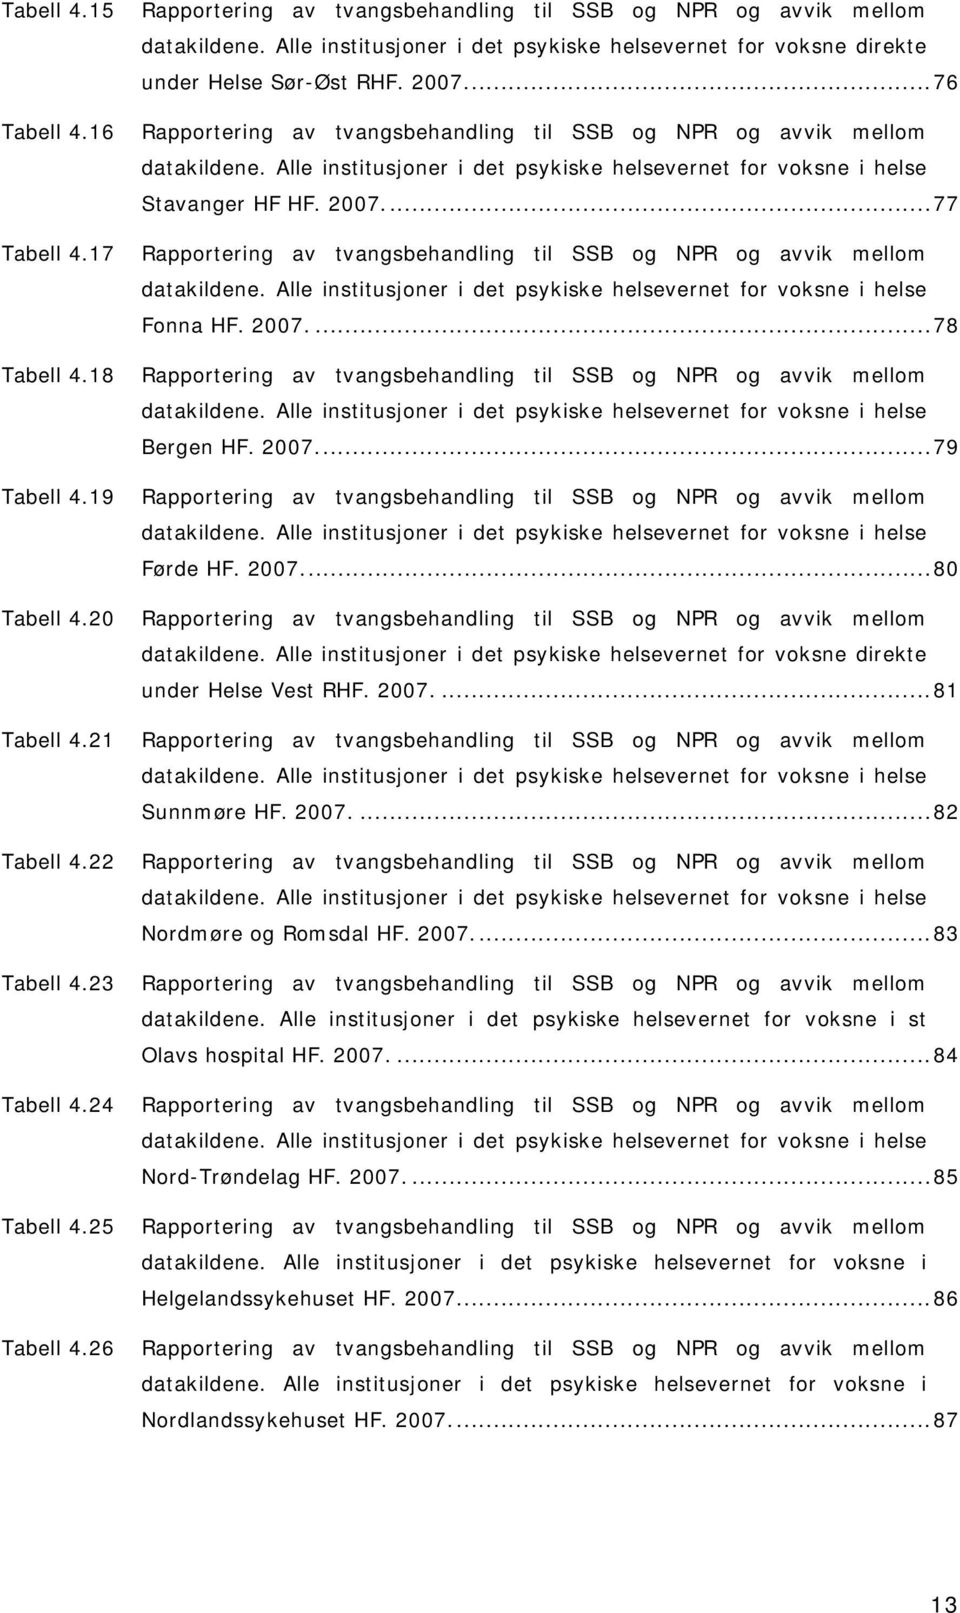 ..76 Rapportering av tvangsbehandling til SSB og NPR og avvik mellom datakildene. Alle institusjoner i det psykiske helsevernet for voksne i helse Stavanger HF HF. 2007.